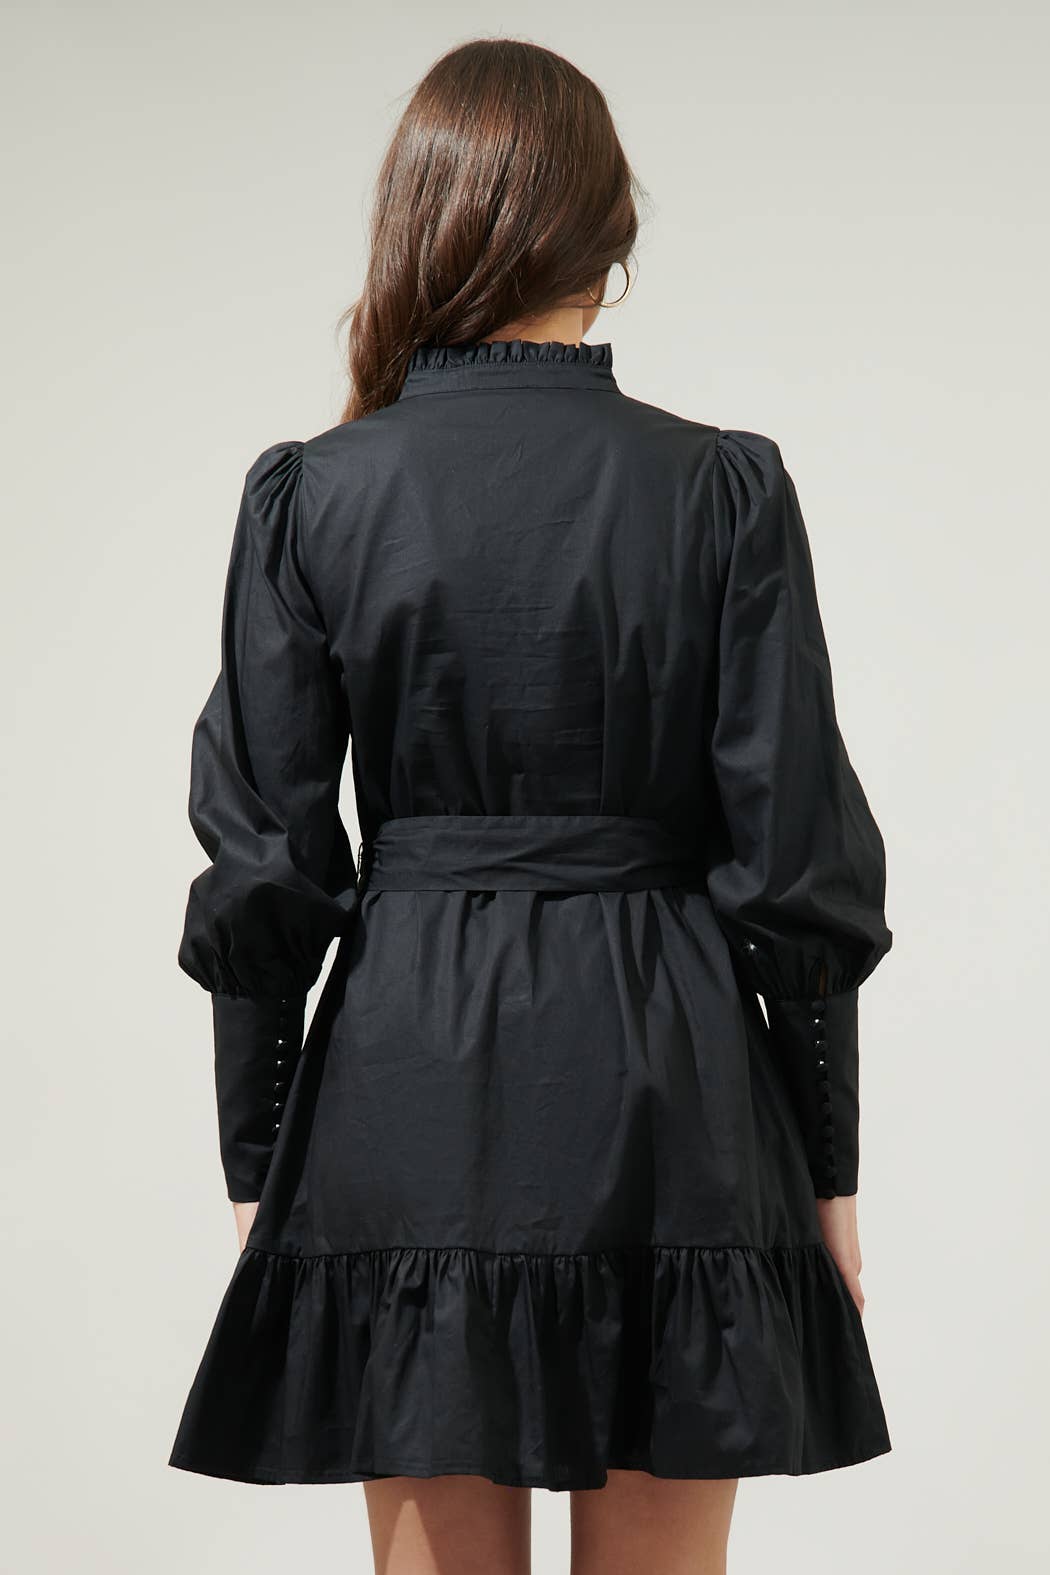 Beacher Pintuck Shift Dress: Black / XL